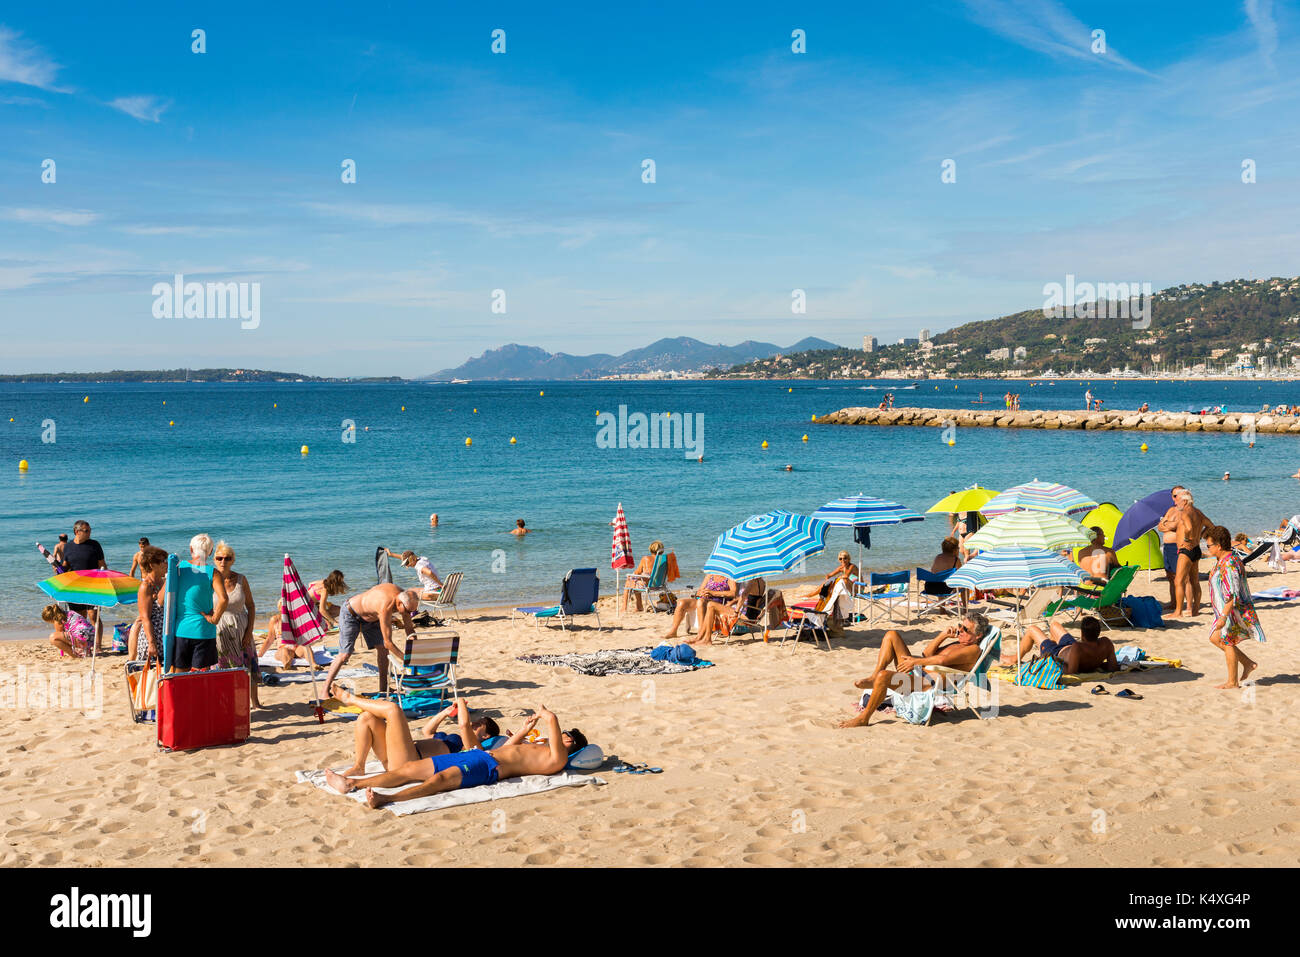 Juan les pins, France - 1 septembre 2017 : plage de Juan les pins, Côte d'Azur, France. La ville est célèbre pour son festival de jazz annal Banque D'Images